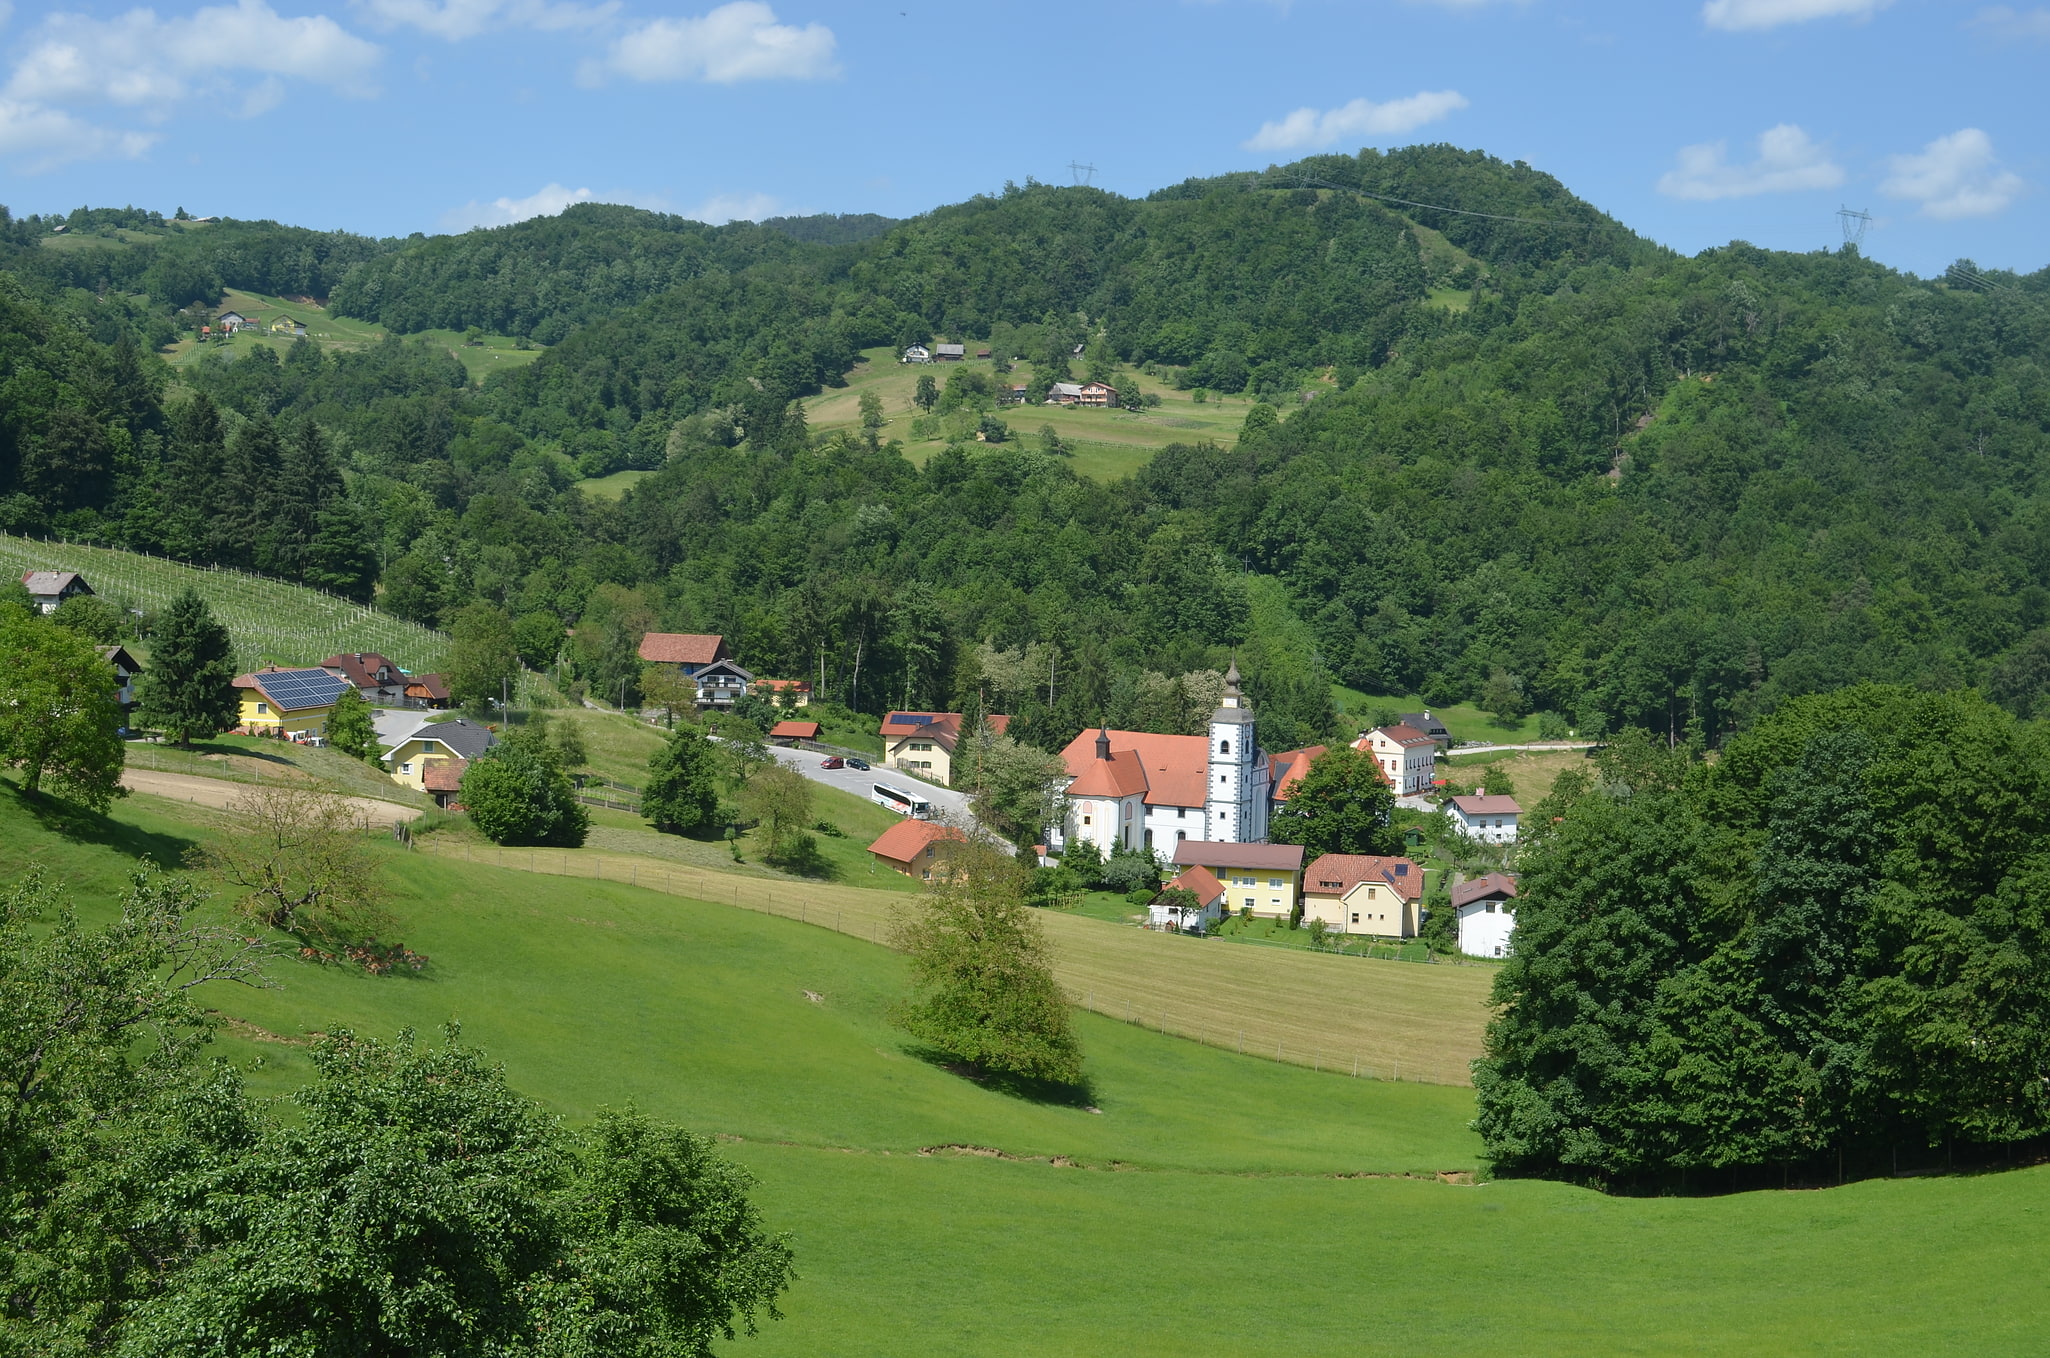 Podčetrtek, Slovenia